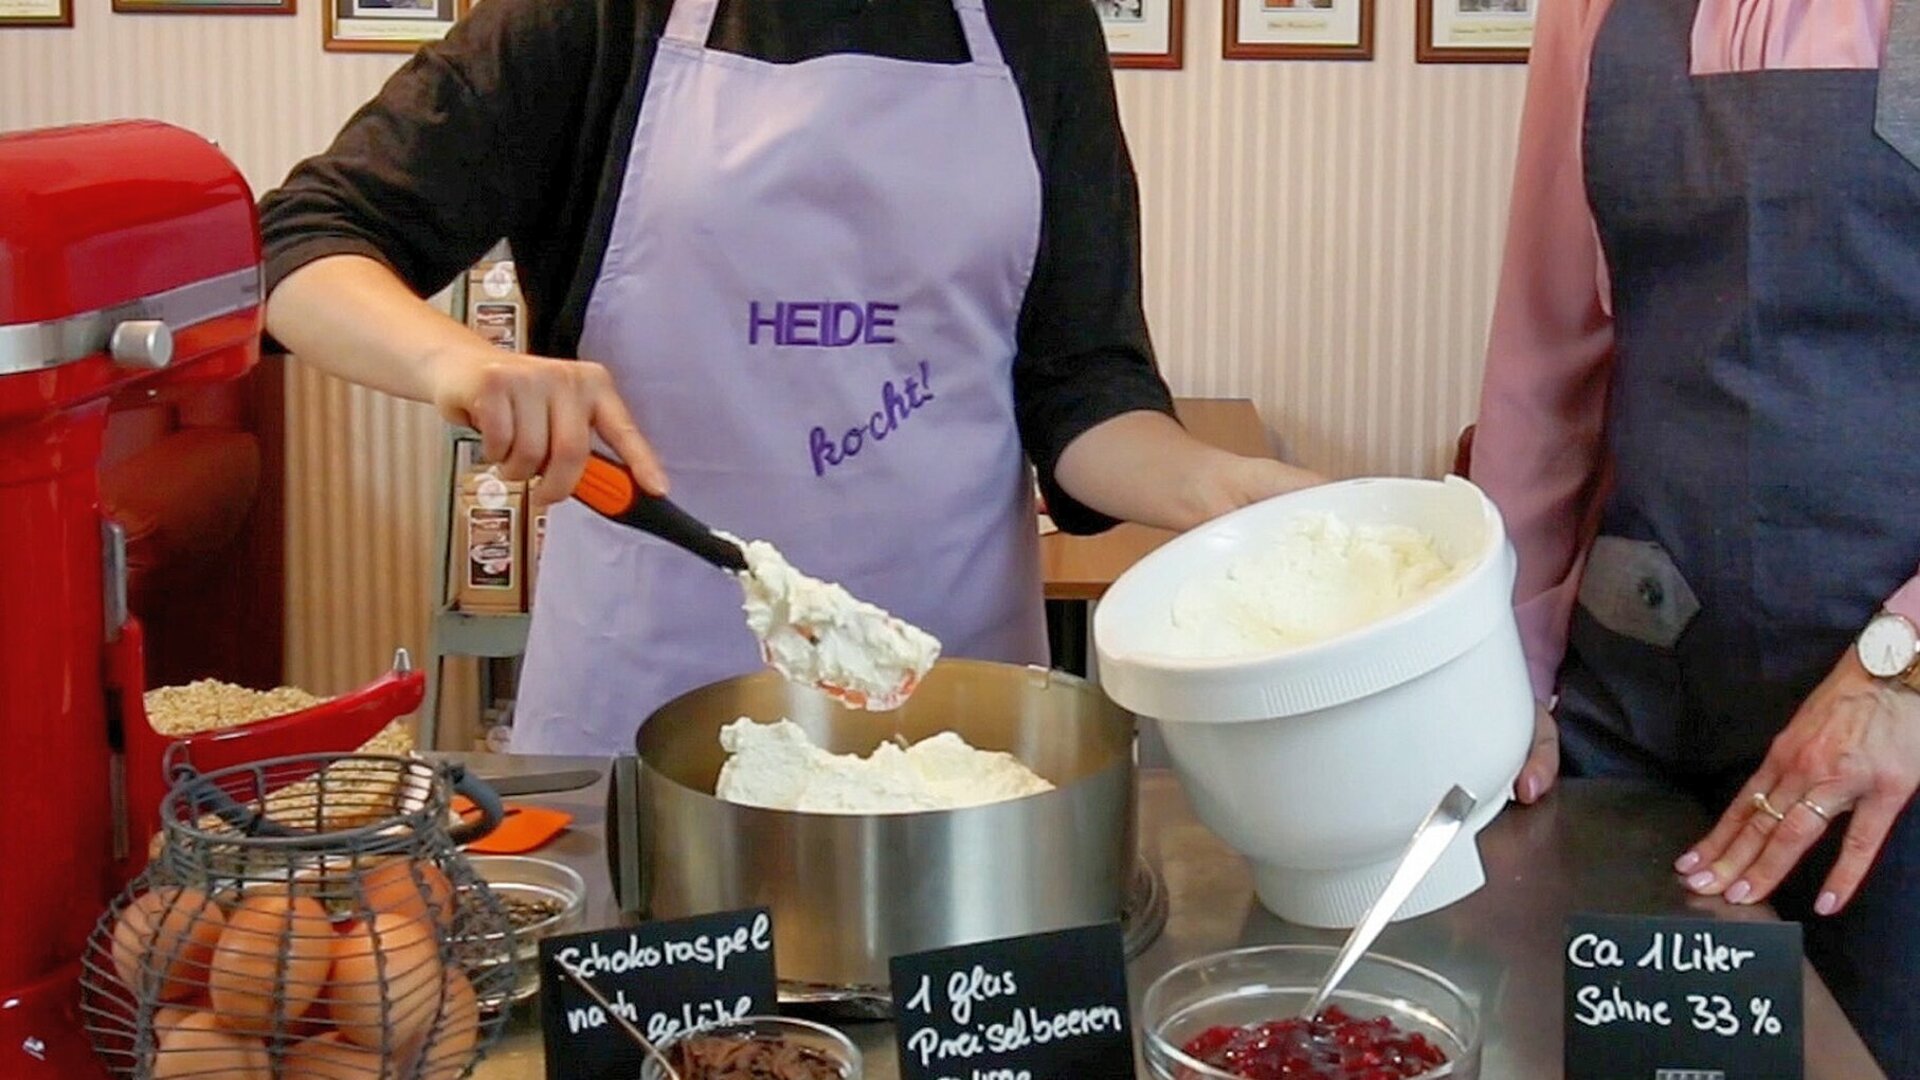 Zwei junge Frauen füllen geschlagene Buttercreme in eine runde Kuchenform. Die links hinter dem Tisch mit den Backzutaten stehende Frau trägt eine lila Schürze mit der Aufschrift "Heide kocht".